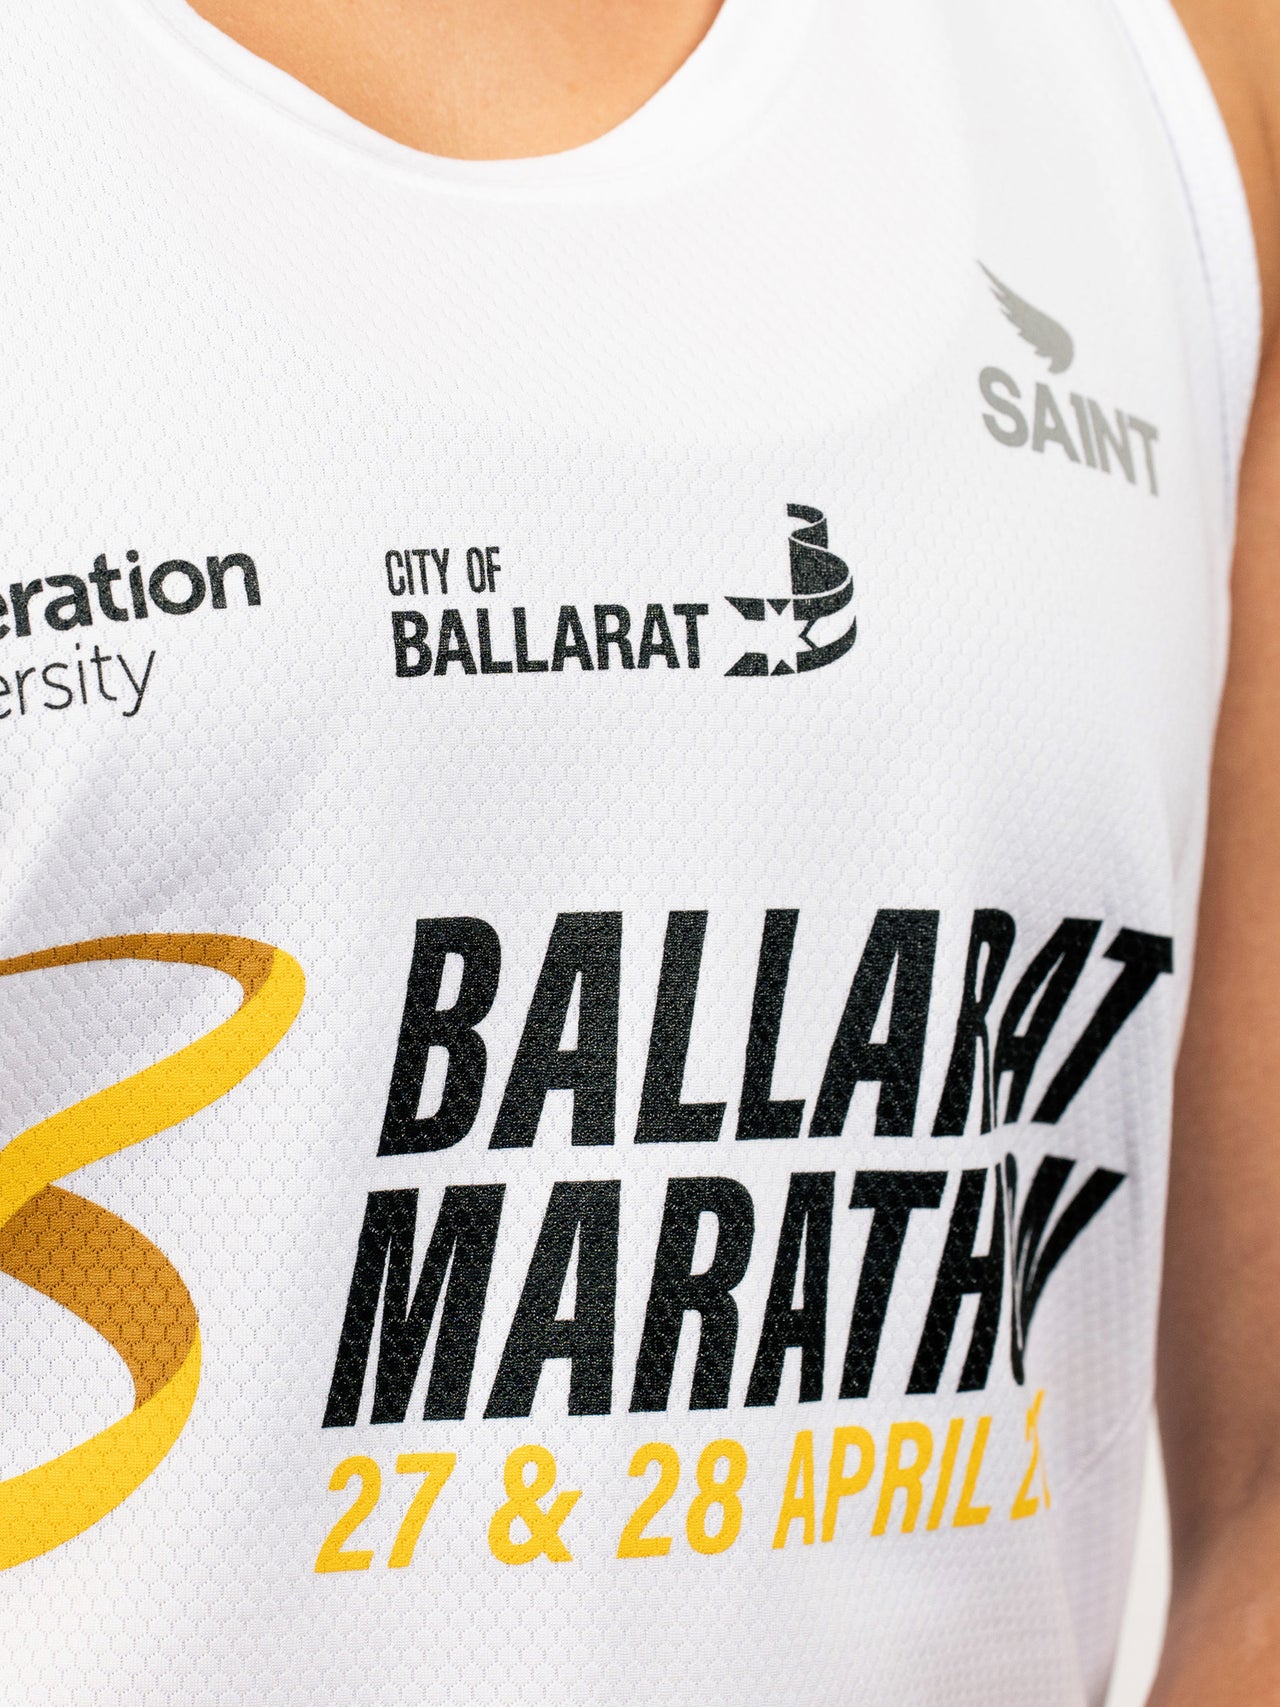 Ballarat Marathon 2024 Run Singlet